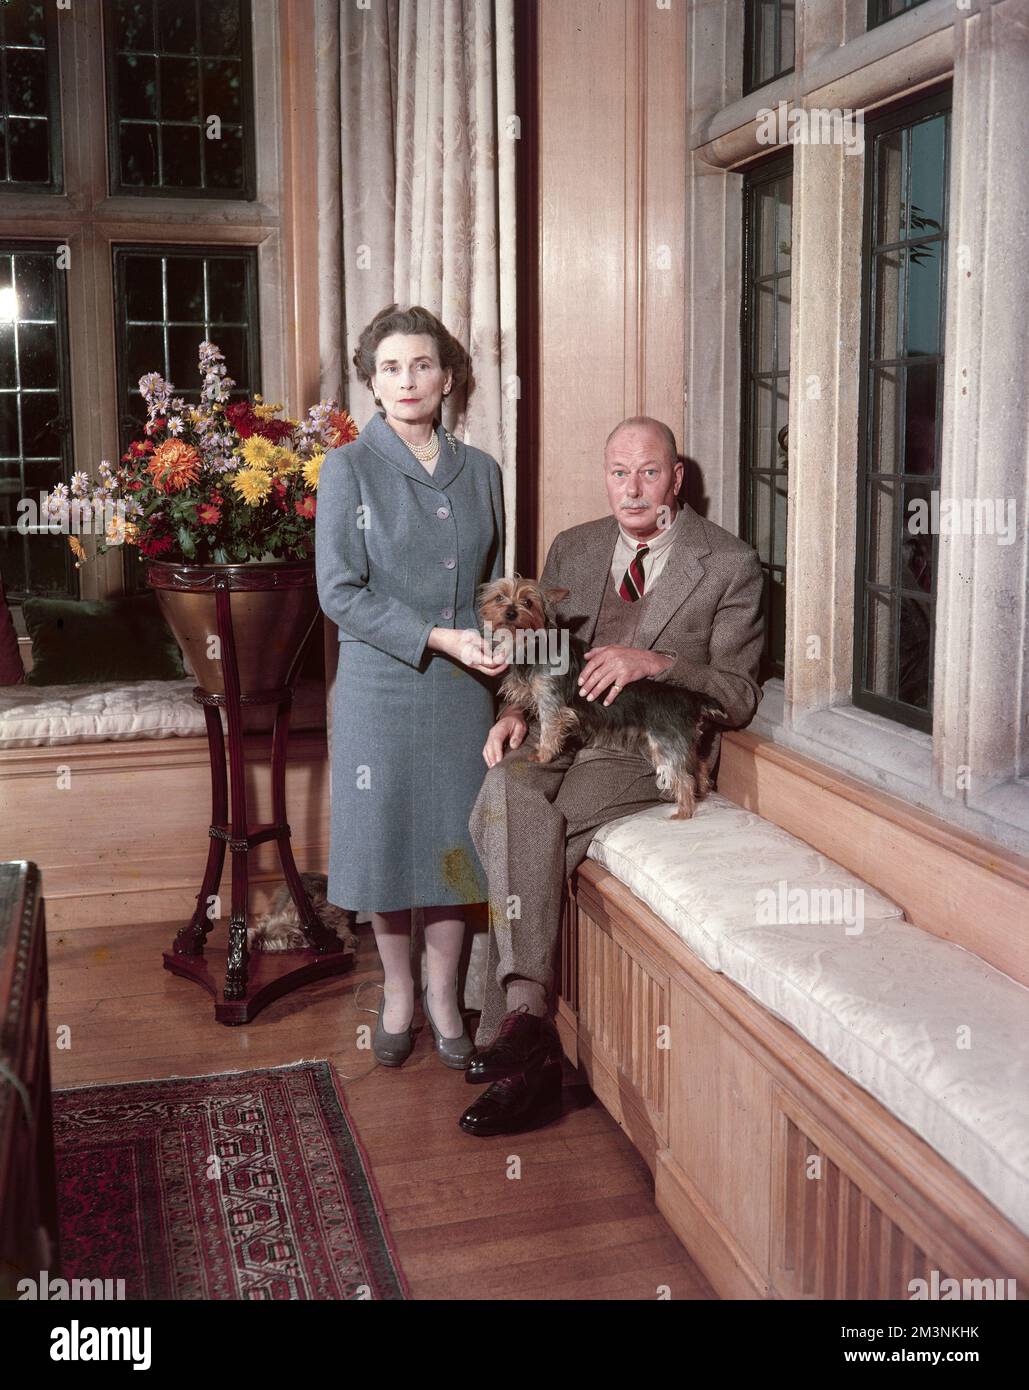 El príncipe Enrique, duque de Gloucester (1900 - 1974), y su esposa, la princesa Alice, duquesa de Gloucester (1901 - 2004), fotografiados juntos en su casa, Barnwell Manor en Northamptonshire. Fecha: 1960 Foto de stock